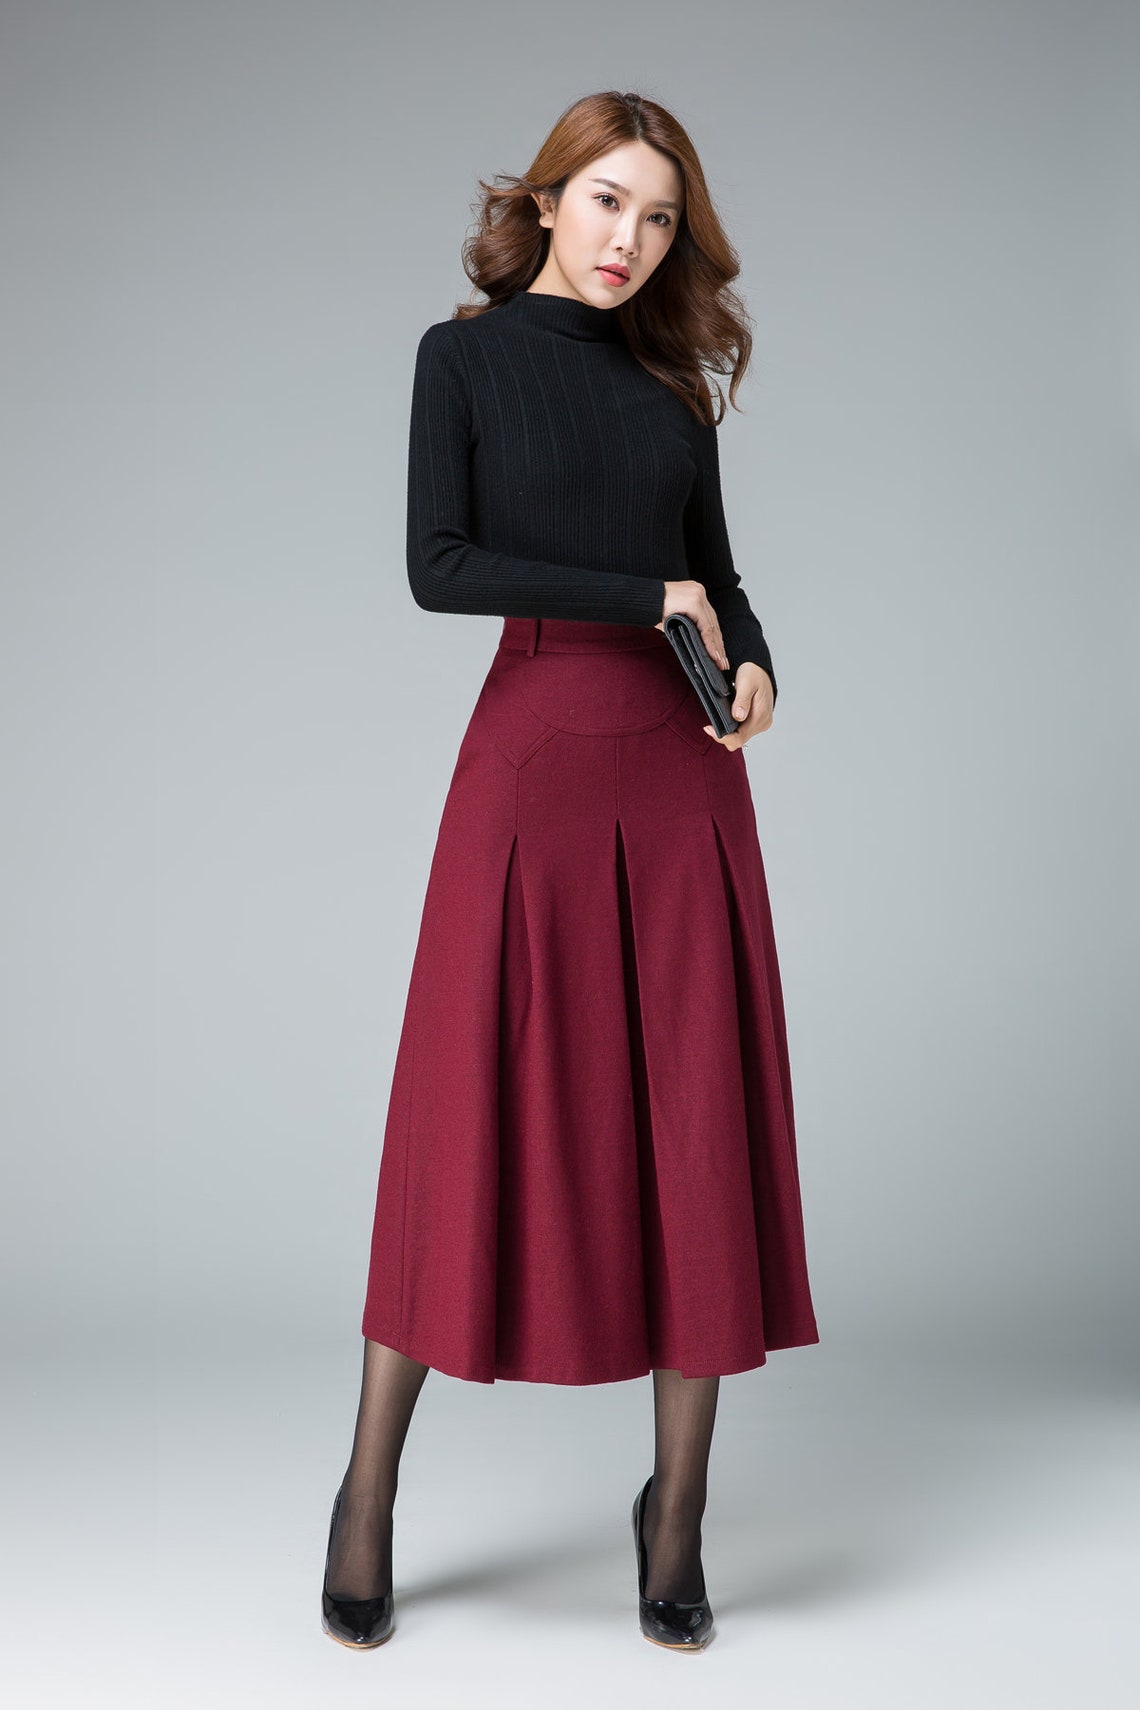 Midi Wool Skirt Red Midi Skirt Office Skirt High Waist - Etsy